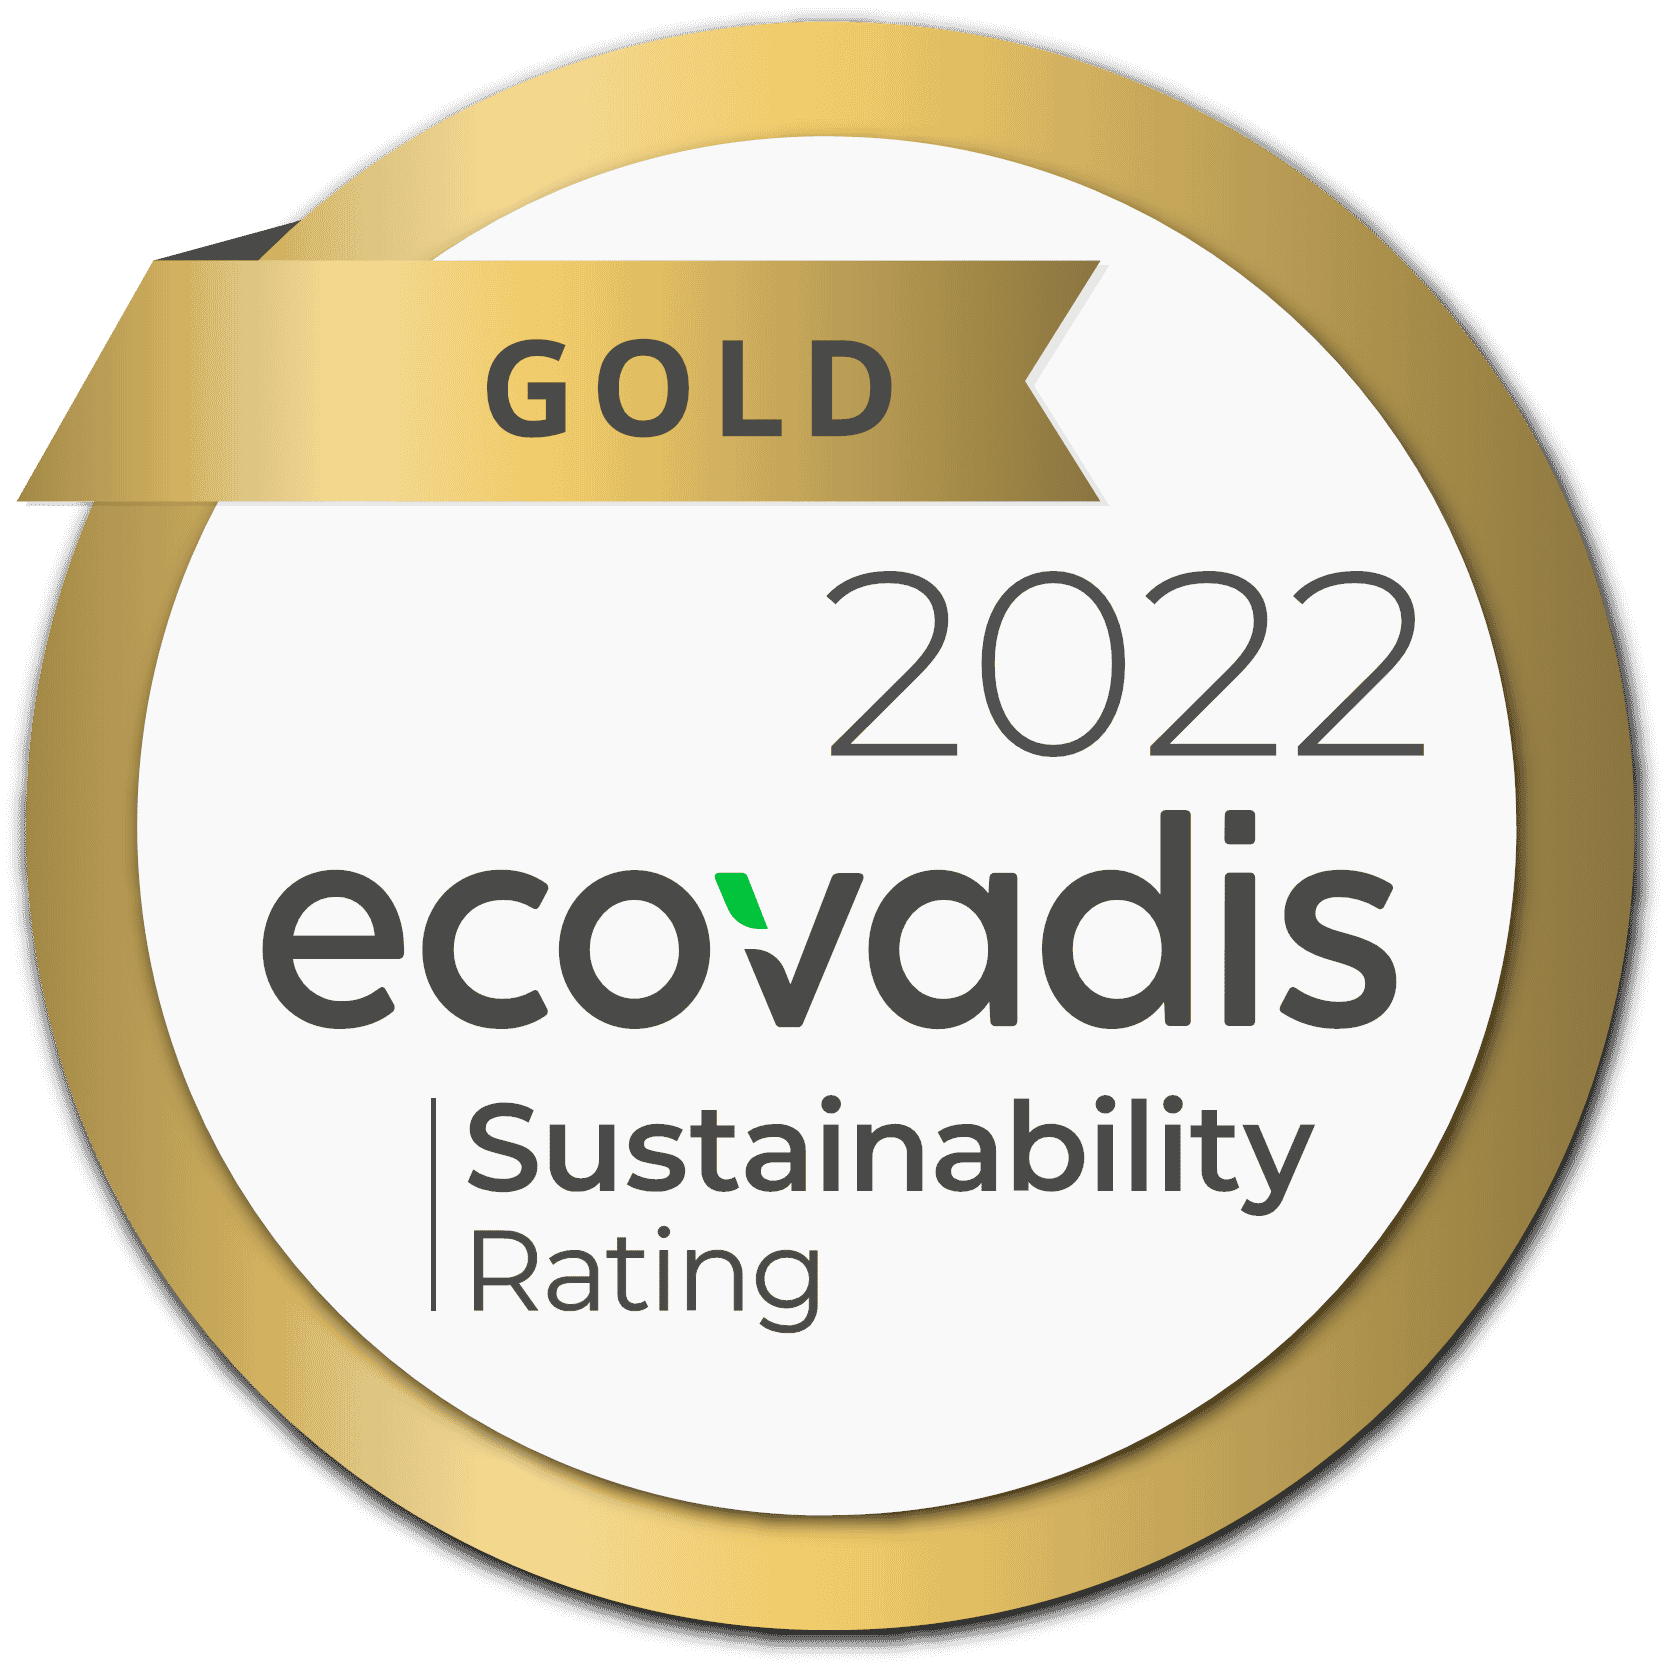 Vuosi 2022 - Wibax Group on jälleen sijoittunut korkealle EcoVadisin yristysten kestävän kehityksen suorituskyvyn arvioinnissa, jossa Wibaxille myönnettiin kultamitali vuodelle 2022. EcoVadis arvioi yritysten toimintatapoja, käytäntöjä ja toimia, jotka liittyvät ympäristöön, työhön ja ihmisoikeuksiin, eettisiin kysymyksiin sekä kestäviin hankintoihin.